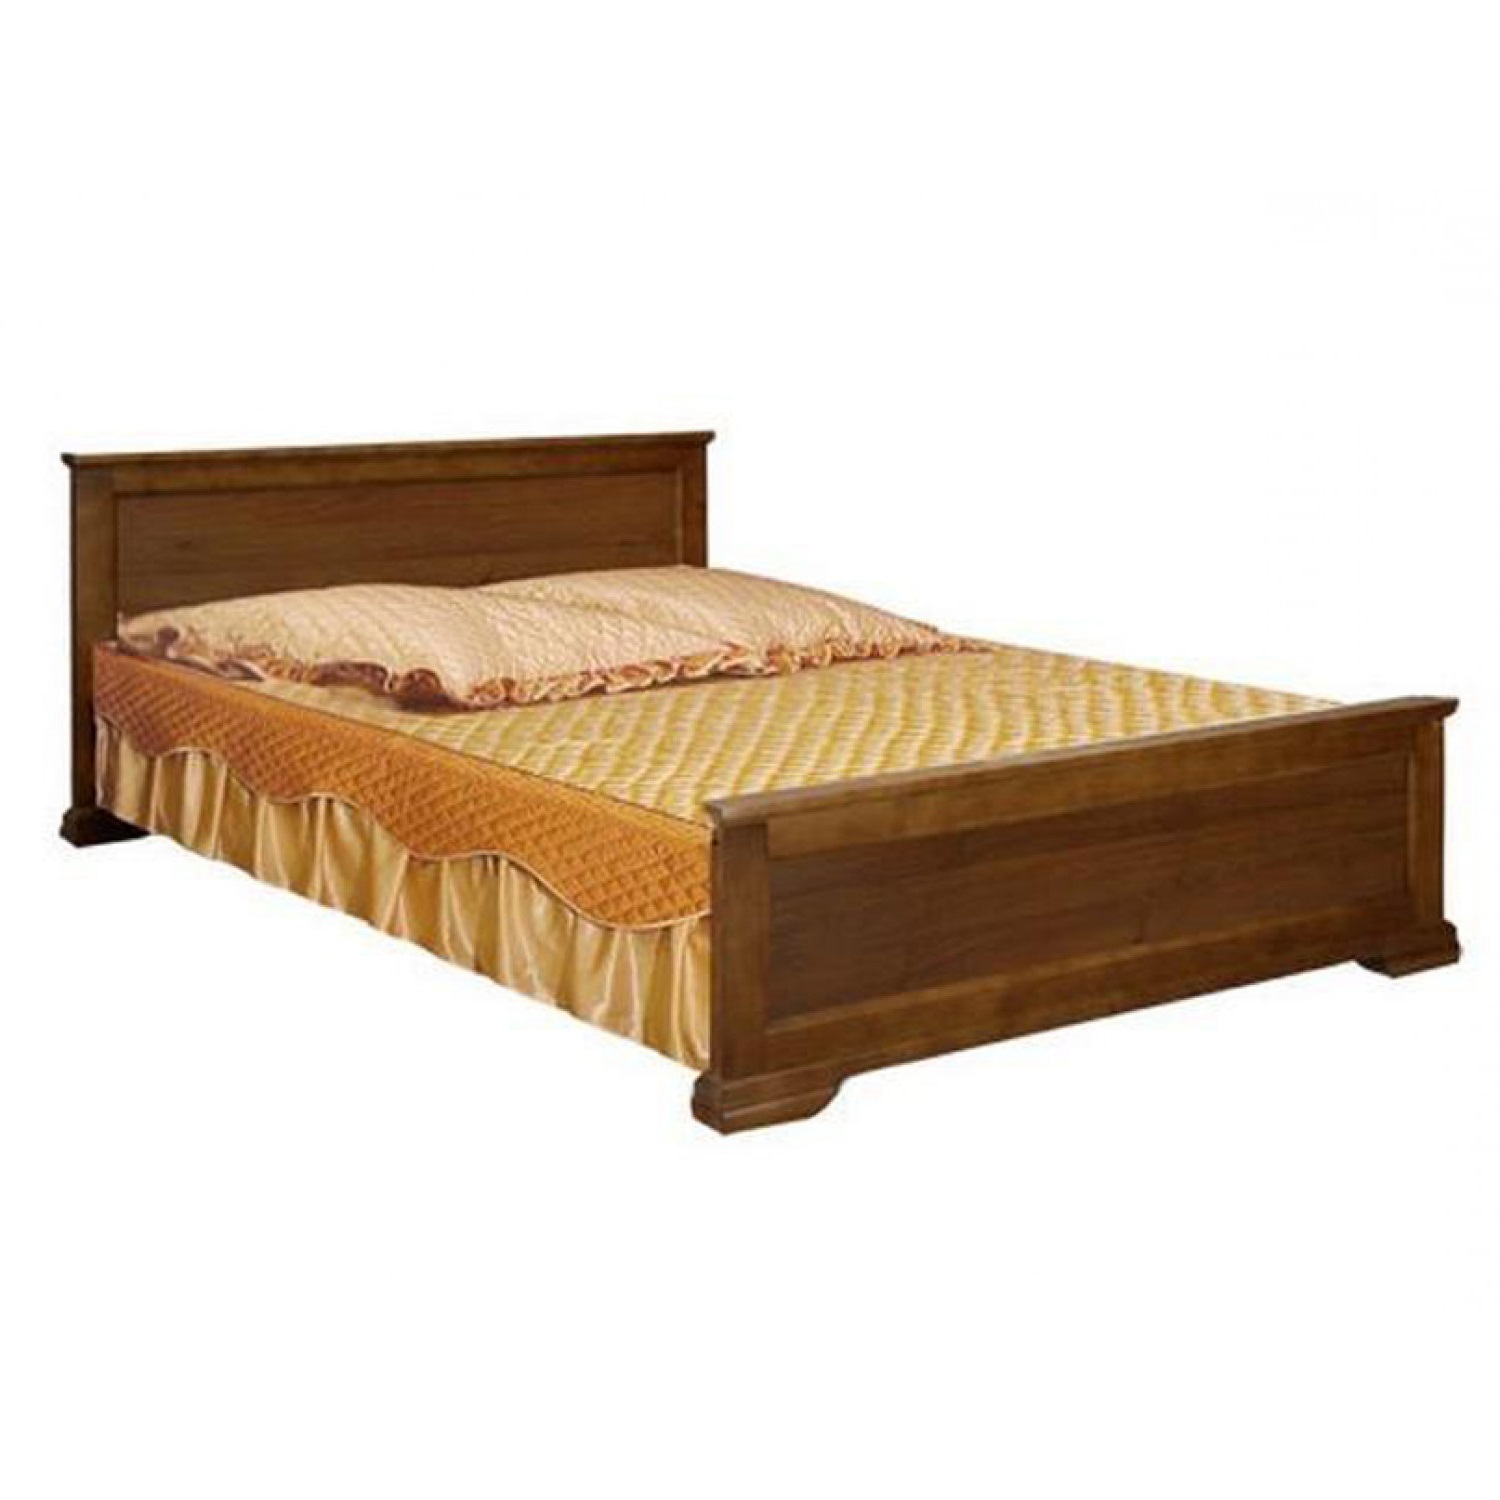 Купить кровать из массива в спб. Кровать деревянная. Кровать из массива. Деревянные кровати из массива. Кровать из массива сосны.